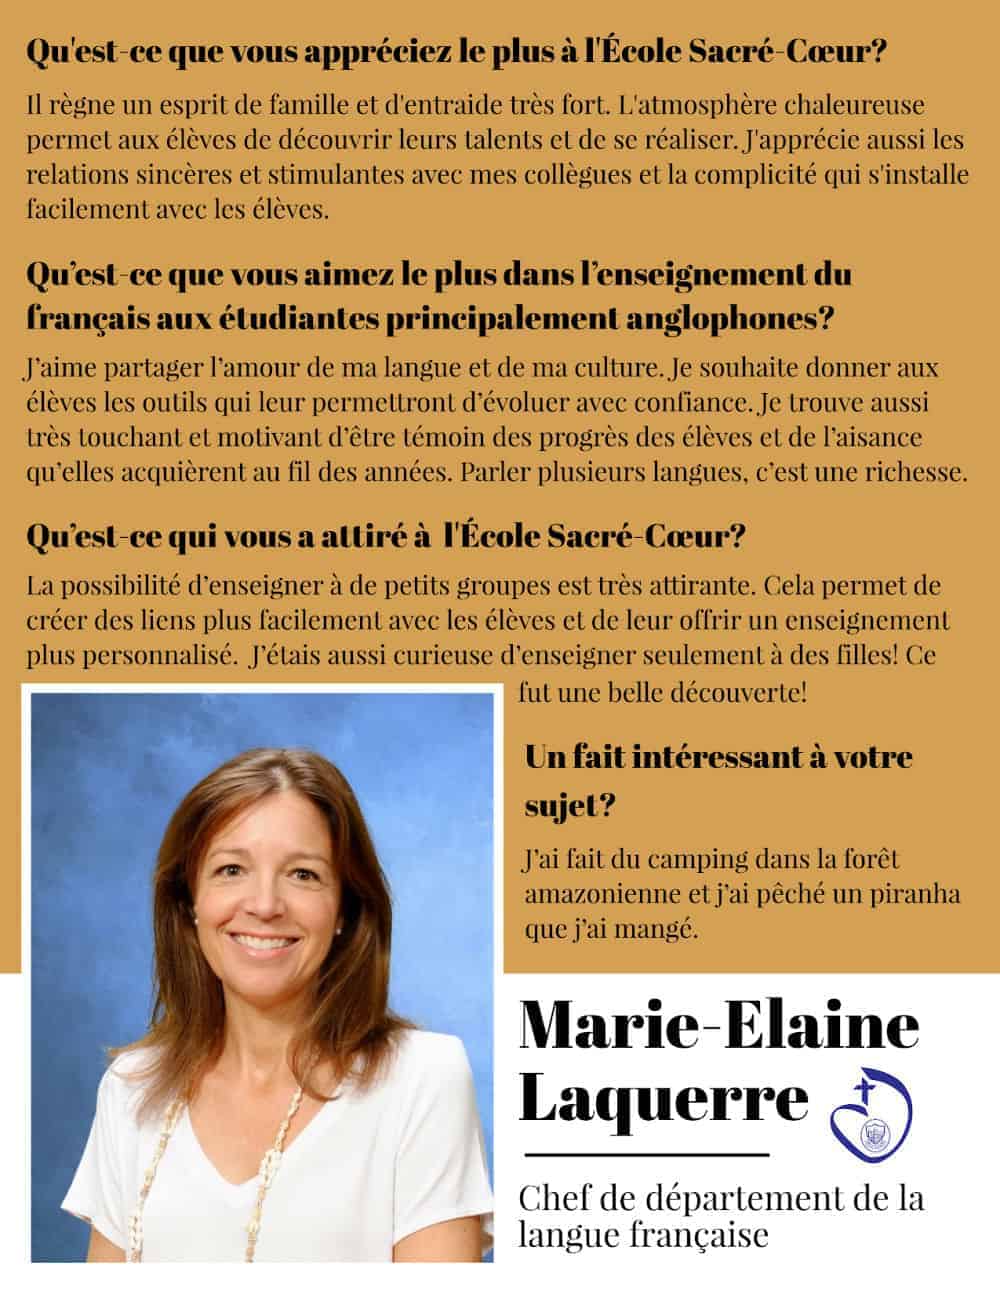 Marie-Elaine-Laquerre-Facebook